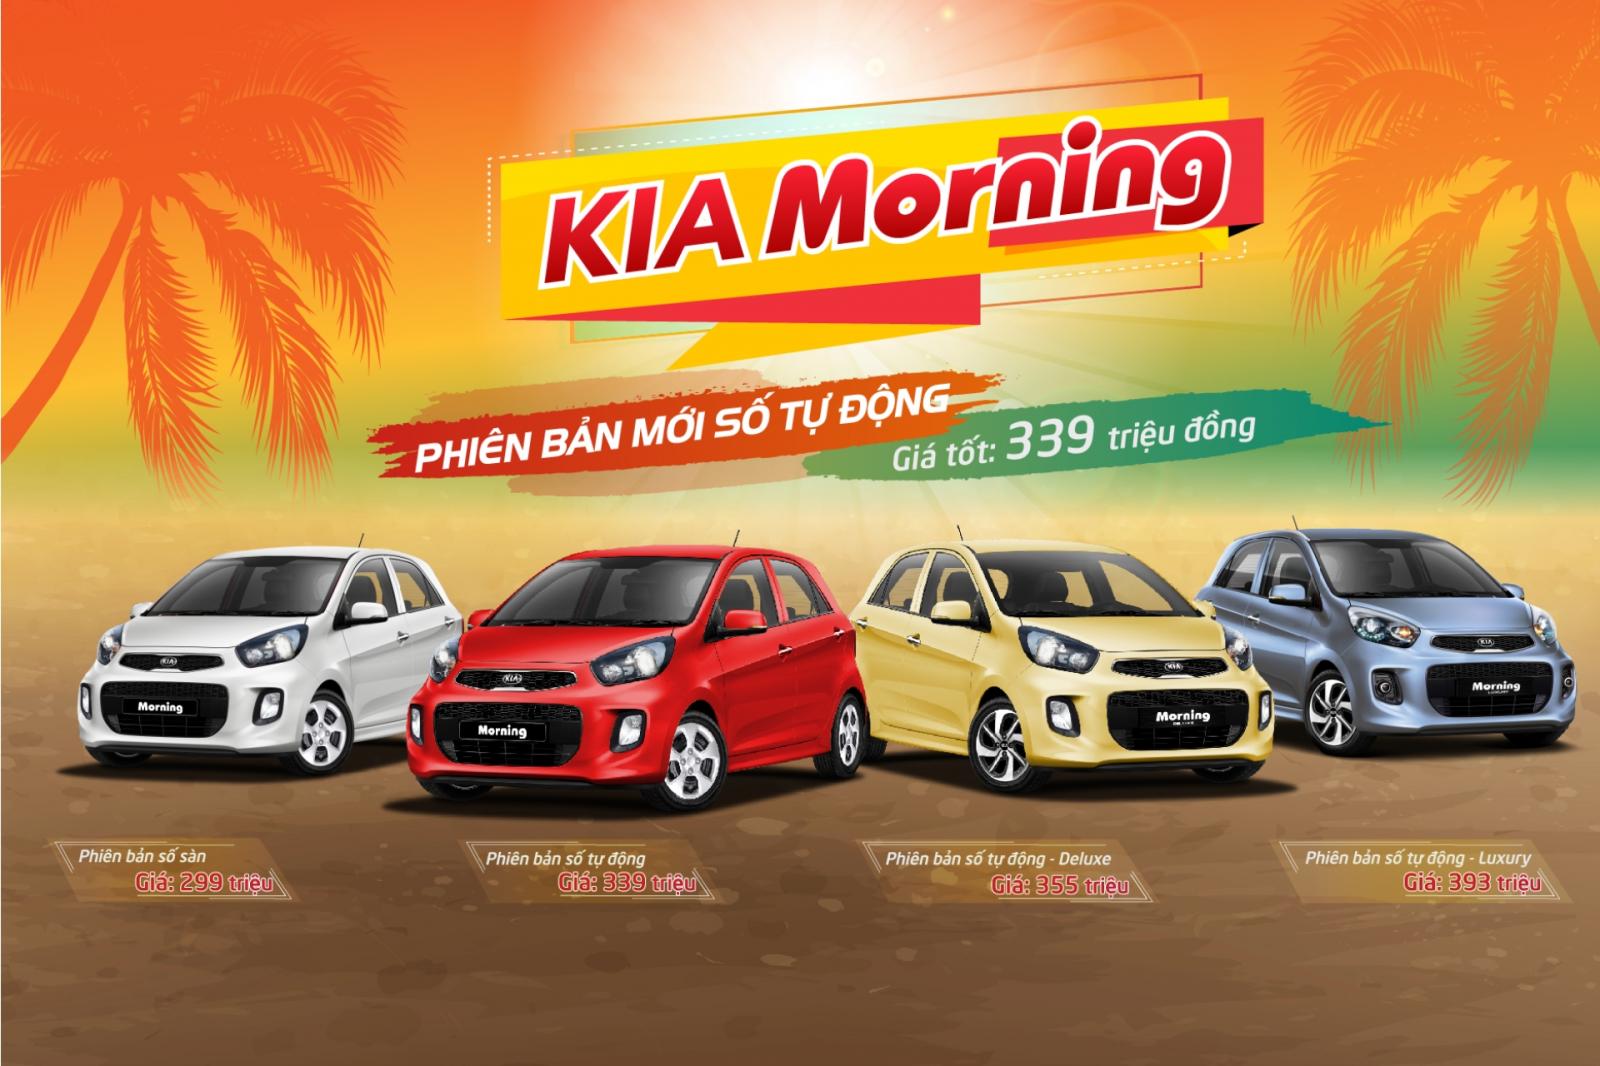 Ra mắt xe Kia Morning số tự động mới chỉ 339 triệu đồng 1a